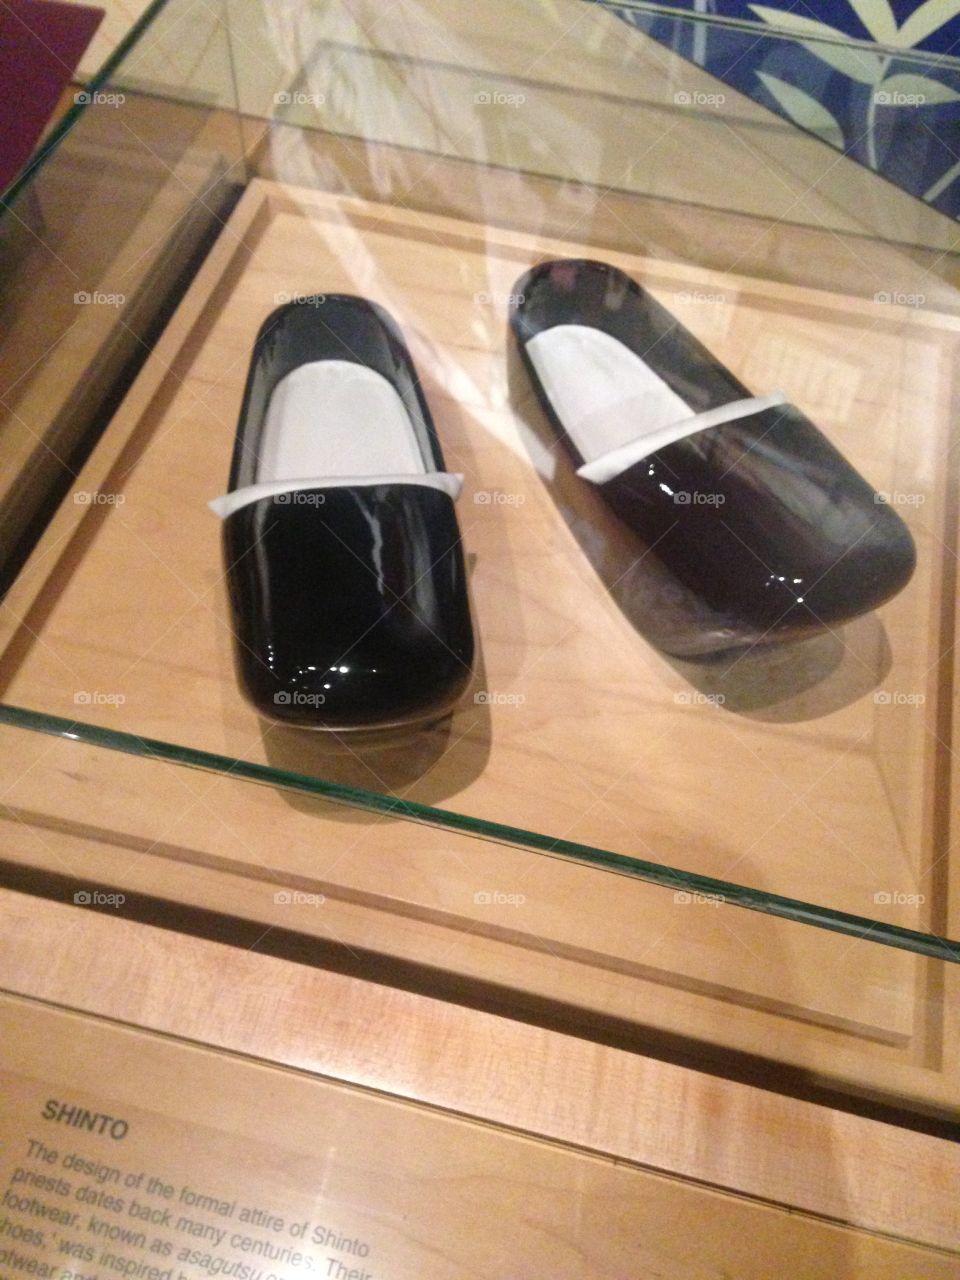 Shinto Shoes